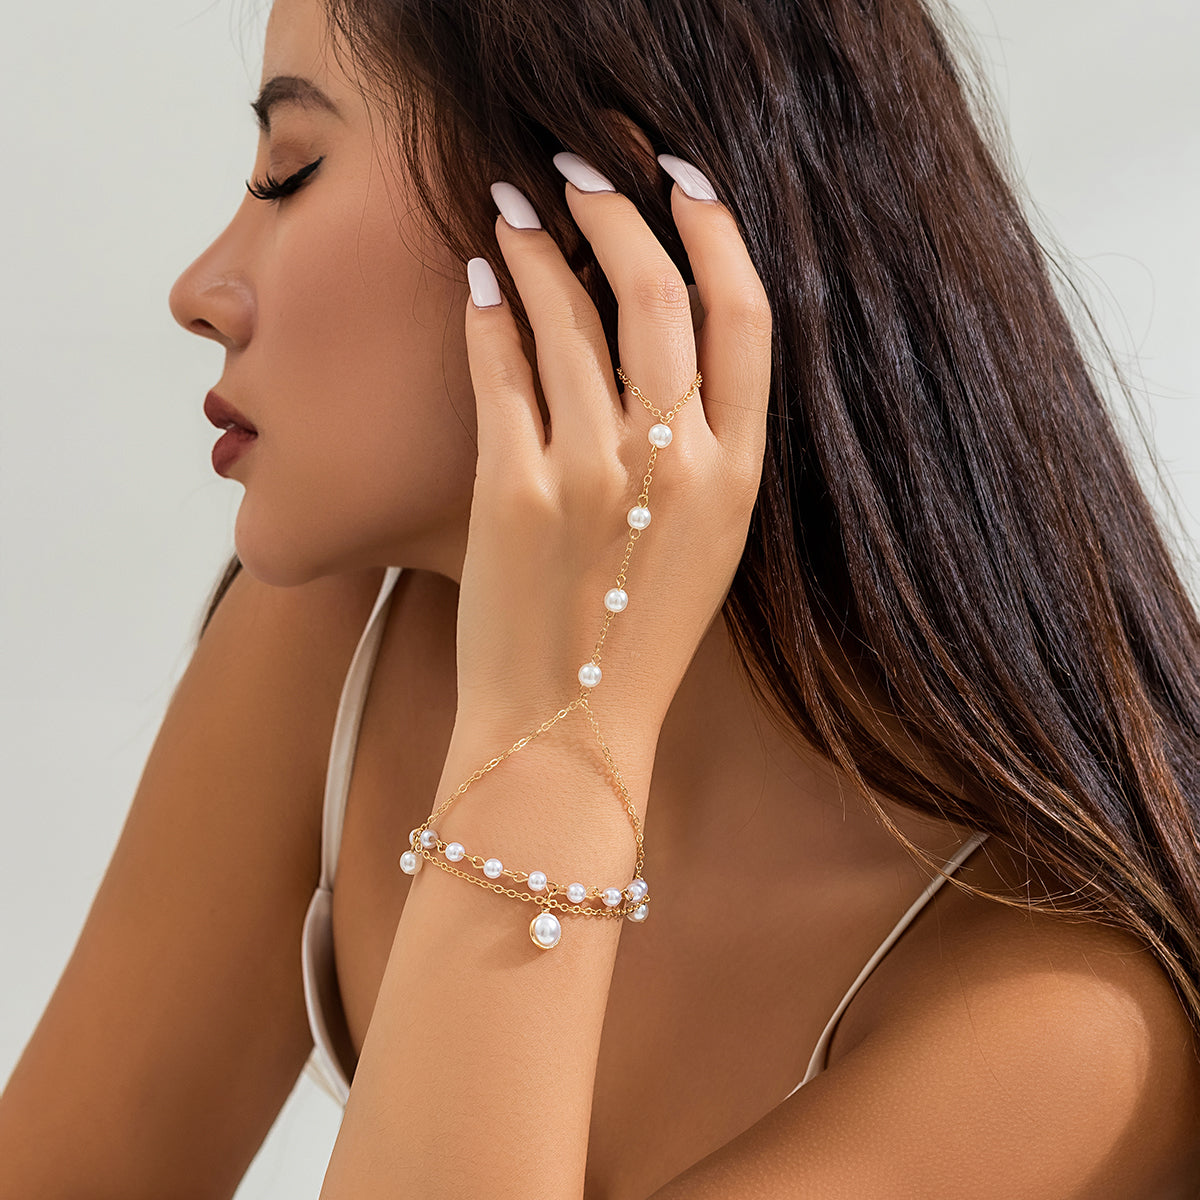 Buy Fashion Pearl Bracelets for Women Teen Girls, 14K Gold Bracelet  Freshwater Pearl Bracelet, Dainty Gold Bracelet Jewelry Gifts, 7